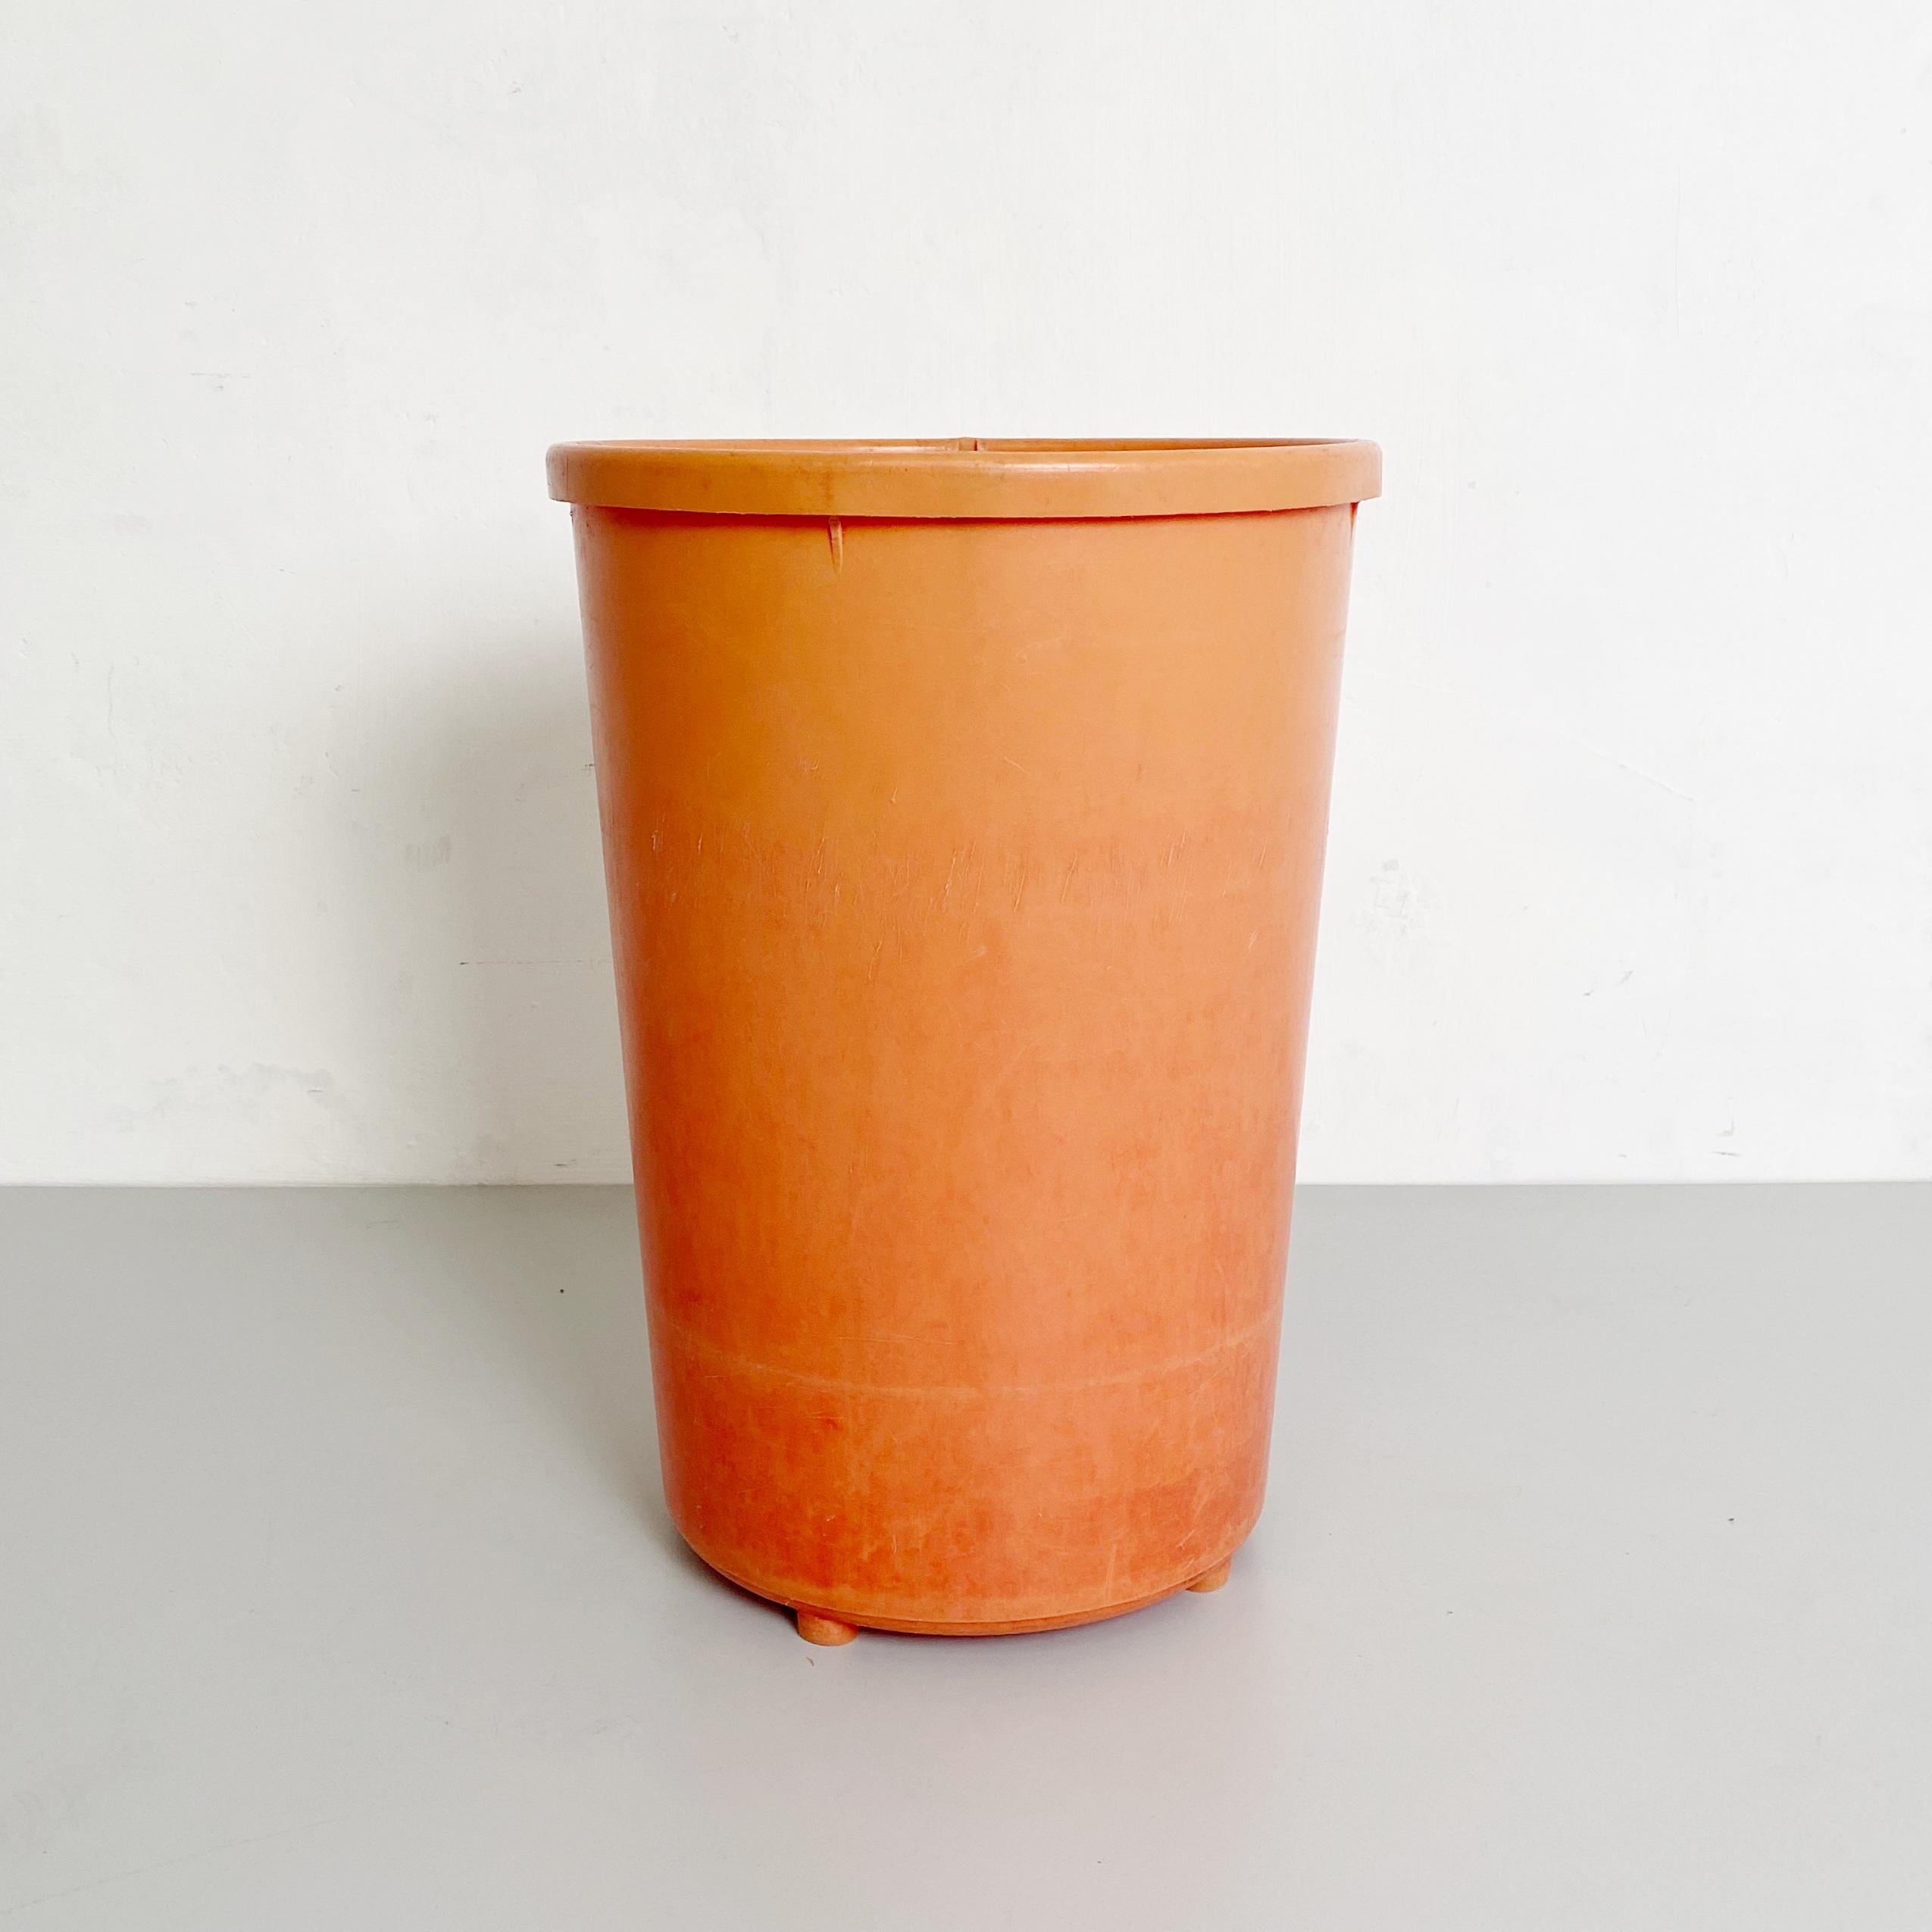 Fin du 20e siècle Corbeille en plastique orange Metaldomus Udine, de style italien moderne du milieu du siècle dernier, années 1980 en vente